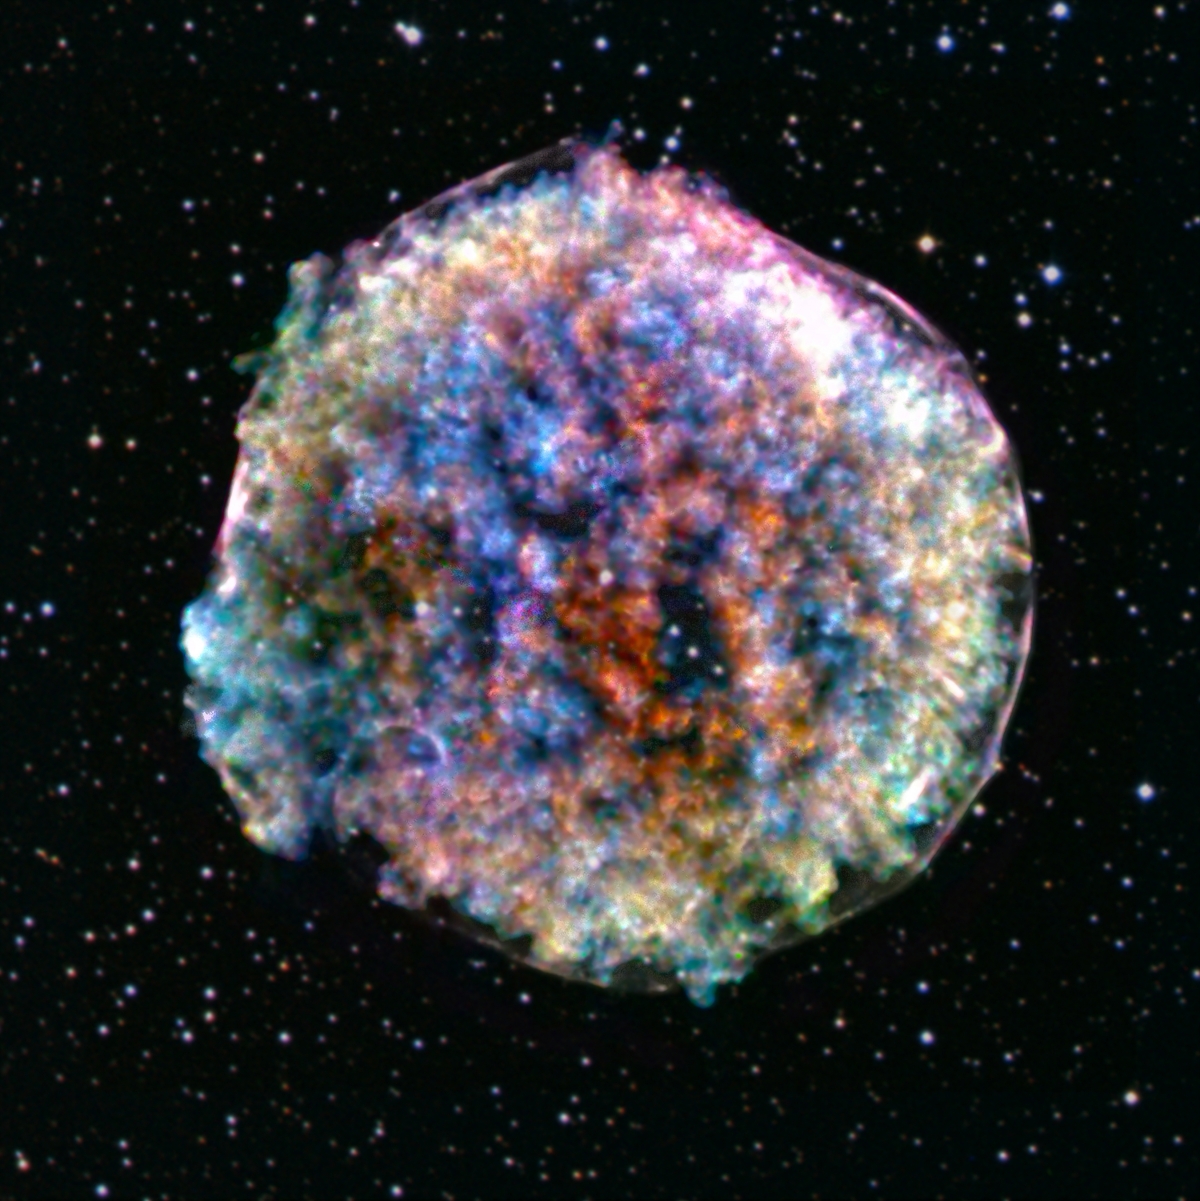 Một vụ nổ siêu tân tinh đánh dấu sự kết thúc cuộc đời của một ngôi sao. Đài quan sát Chandra X-ray - một kính thiên văn hiện đại đã ghi lại những gì còn lại của một vụ nổ như vậy trong chòm sao Thiên Hậu. Bức ảnh này cho thấy bức xạ tia X phát ra từ tàn dư của vụ nổ siêu tân tinh Tycho được phát hiện lần đầu năm 1572. Ngày 18/3/2021, một nhà thiên văn học nghiệp dư Nhật Bản Yuji Nakamura đã phát hiện ra một vụ nổ siêu tân tinh khác trong chòm Thiên Hậu, được gọi là Nova Cas 2021.